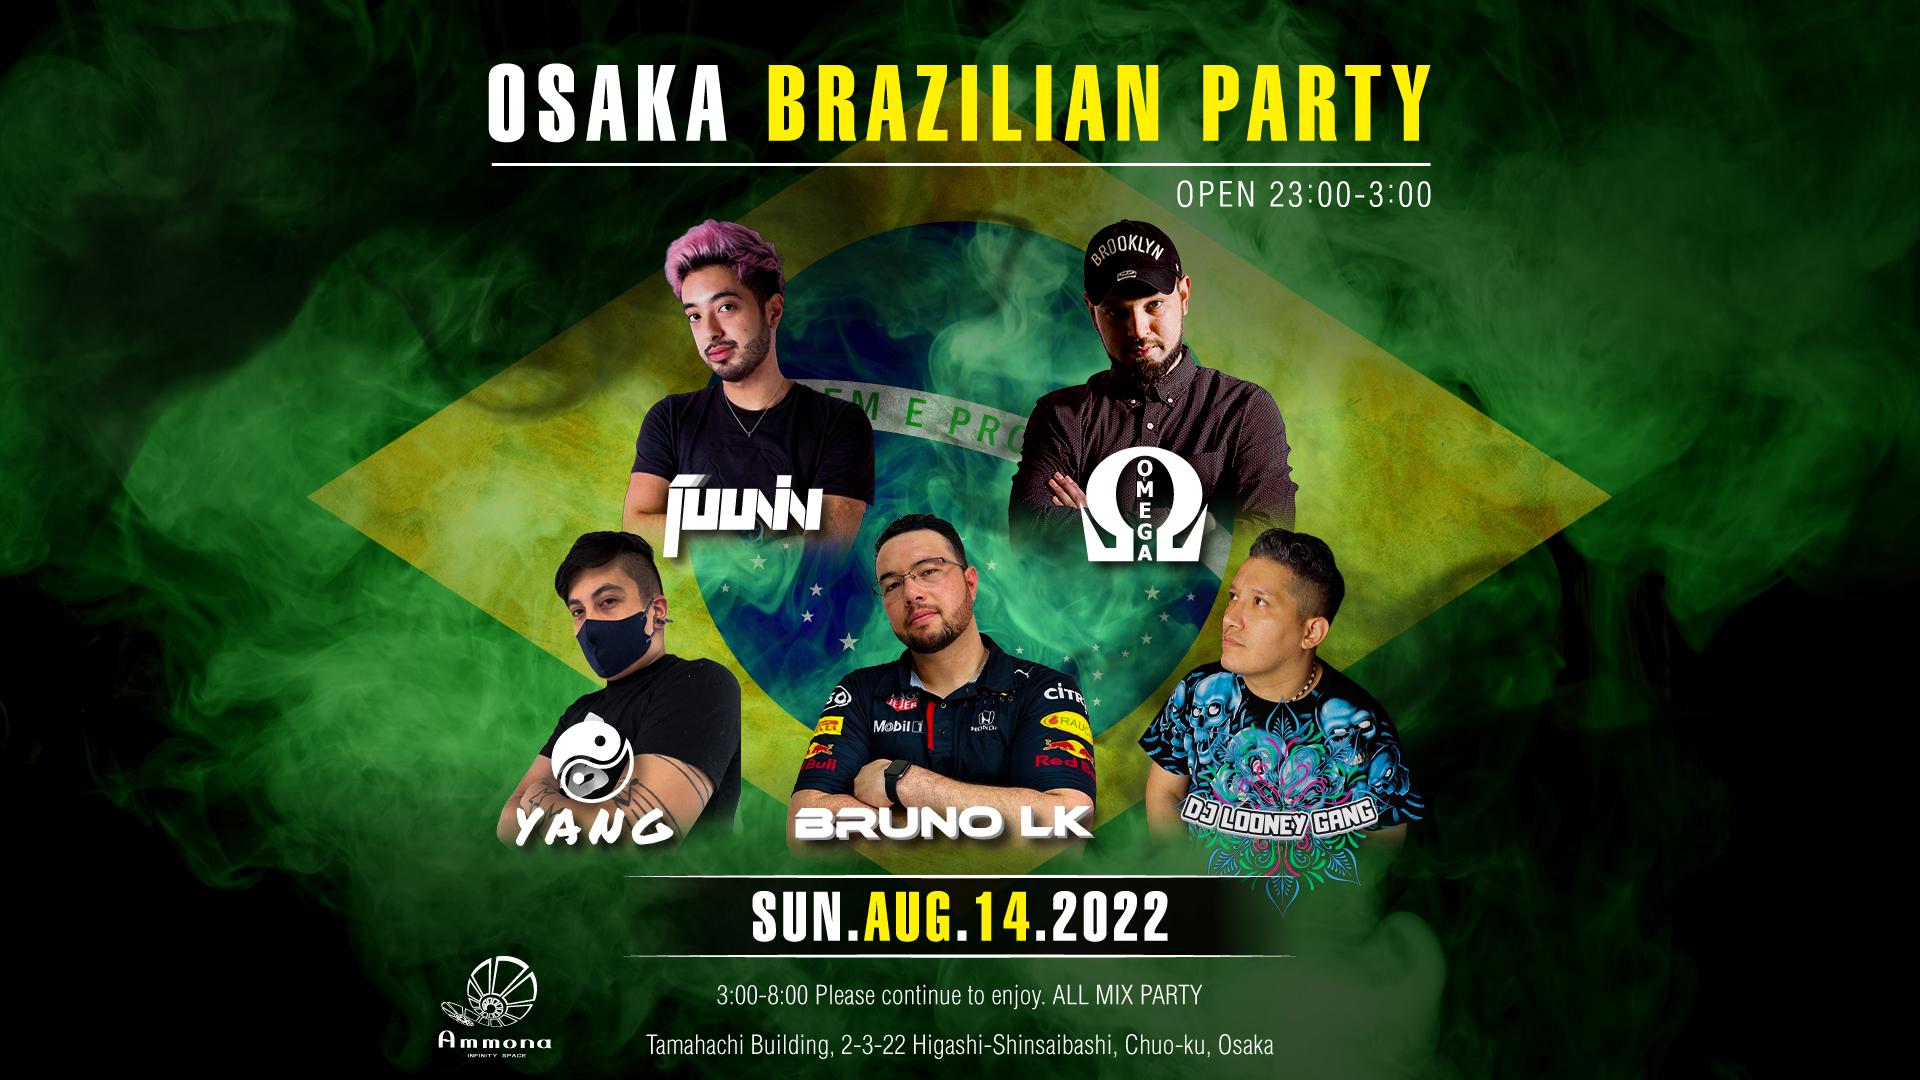 OSAKA BRAZILIAN PARTY